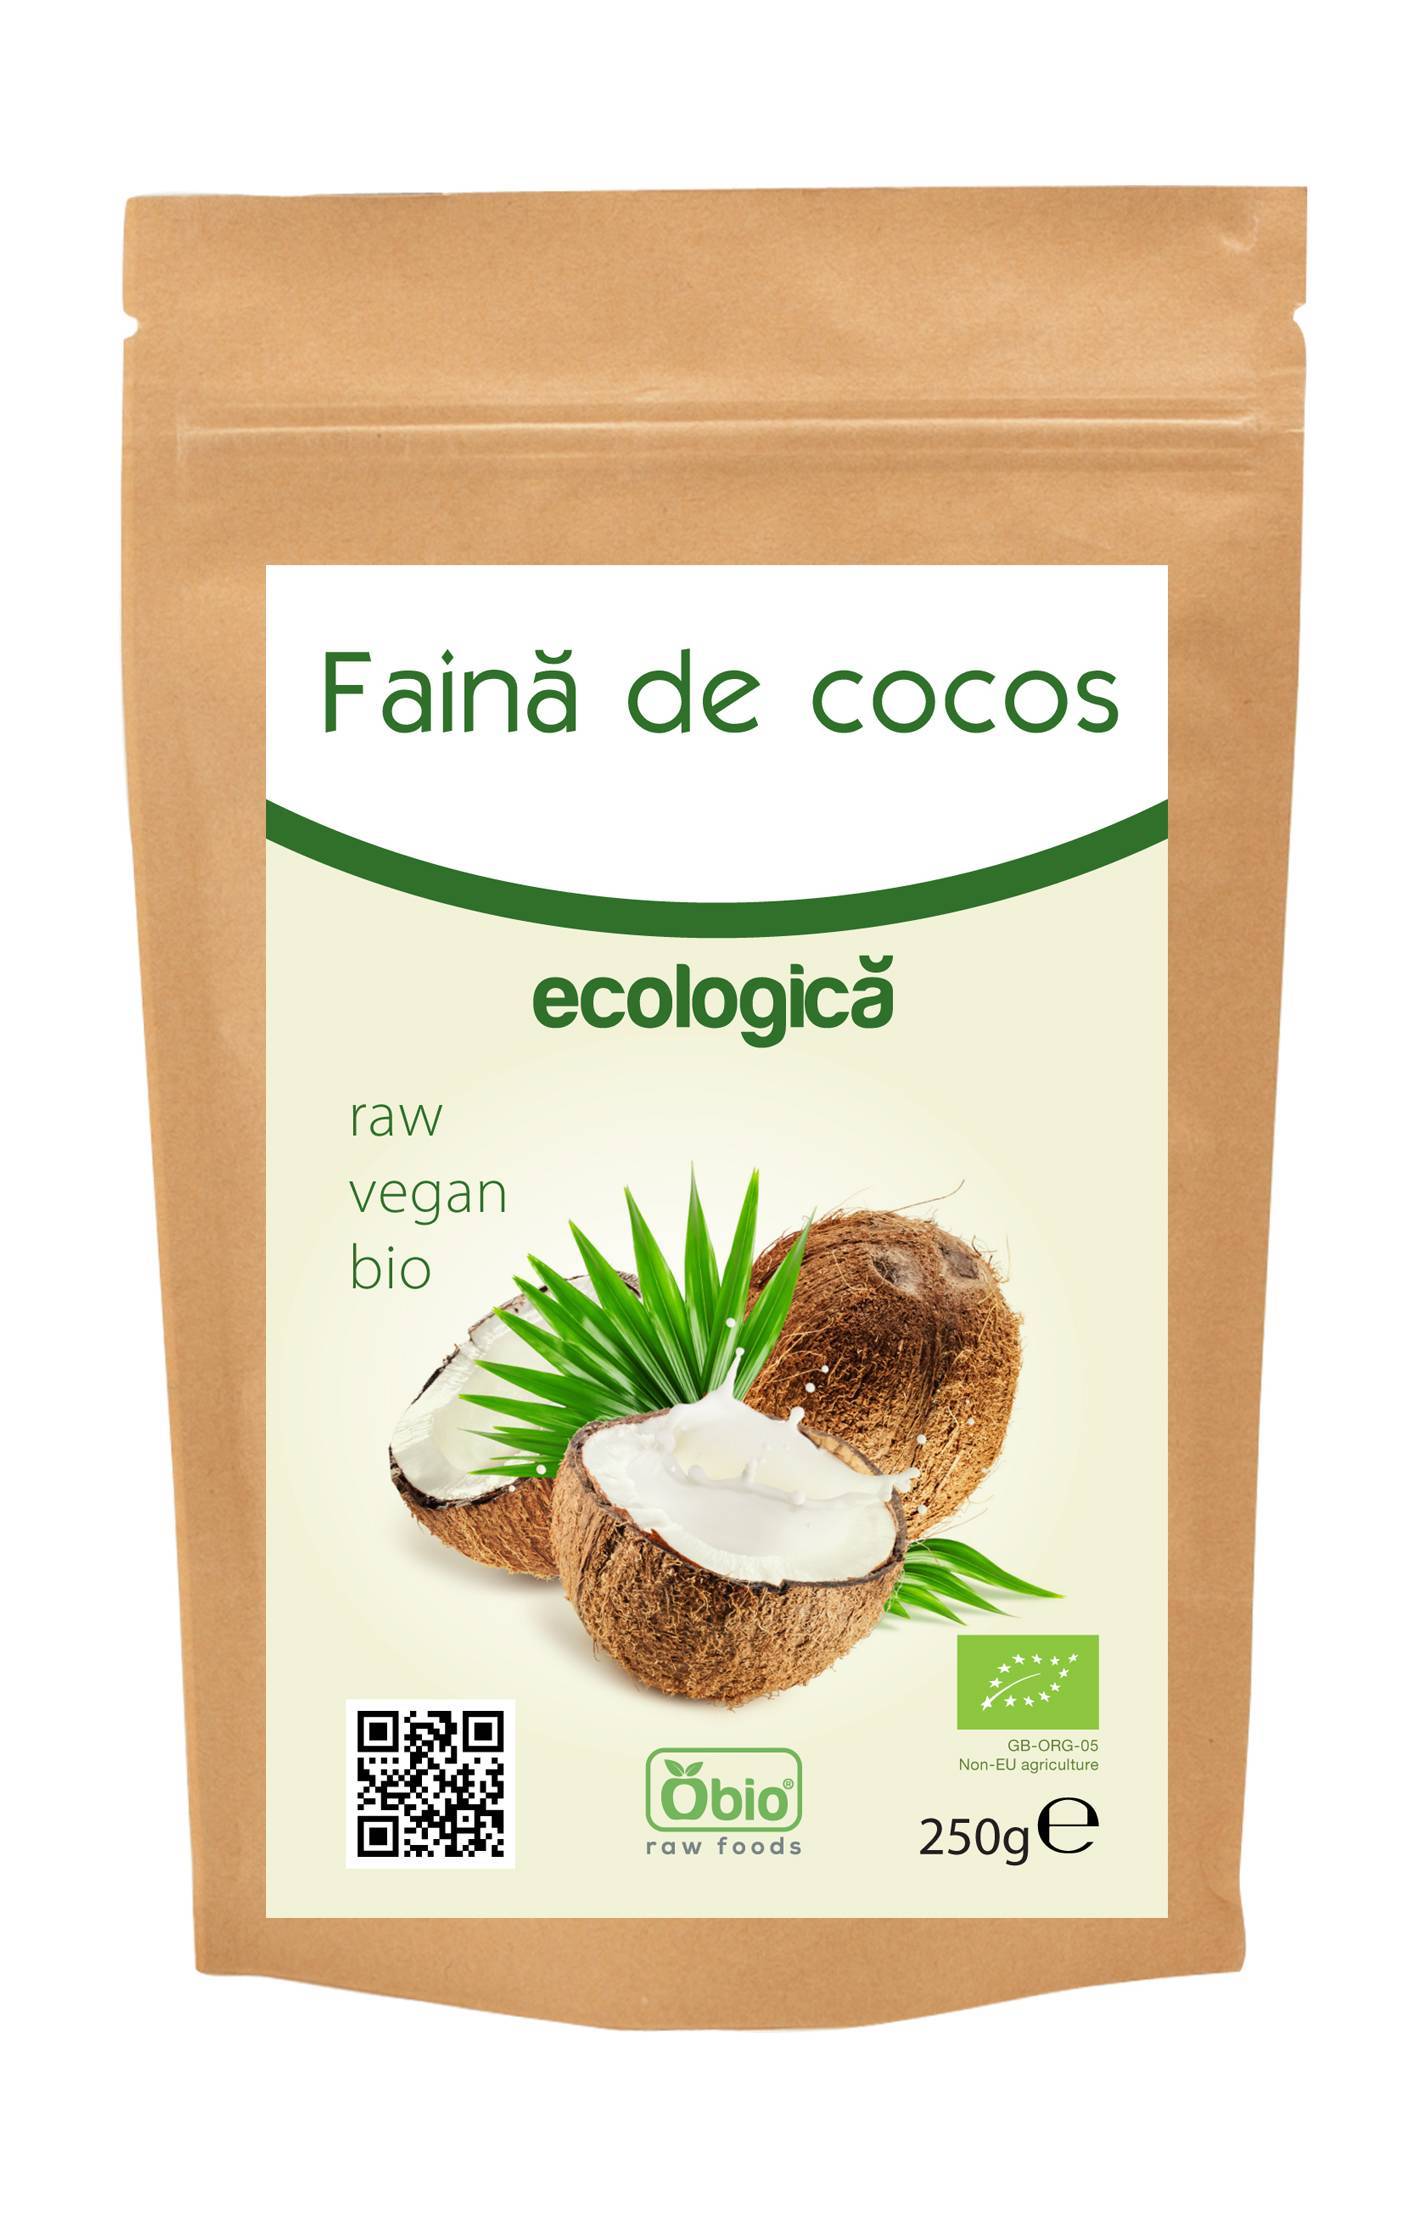 Faina de cocos eco-bio 250g - obio